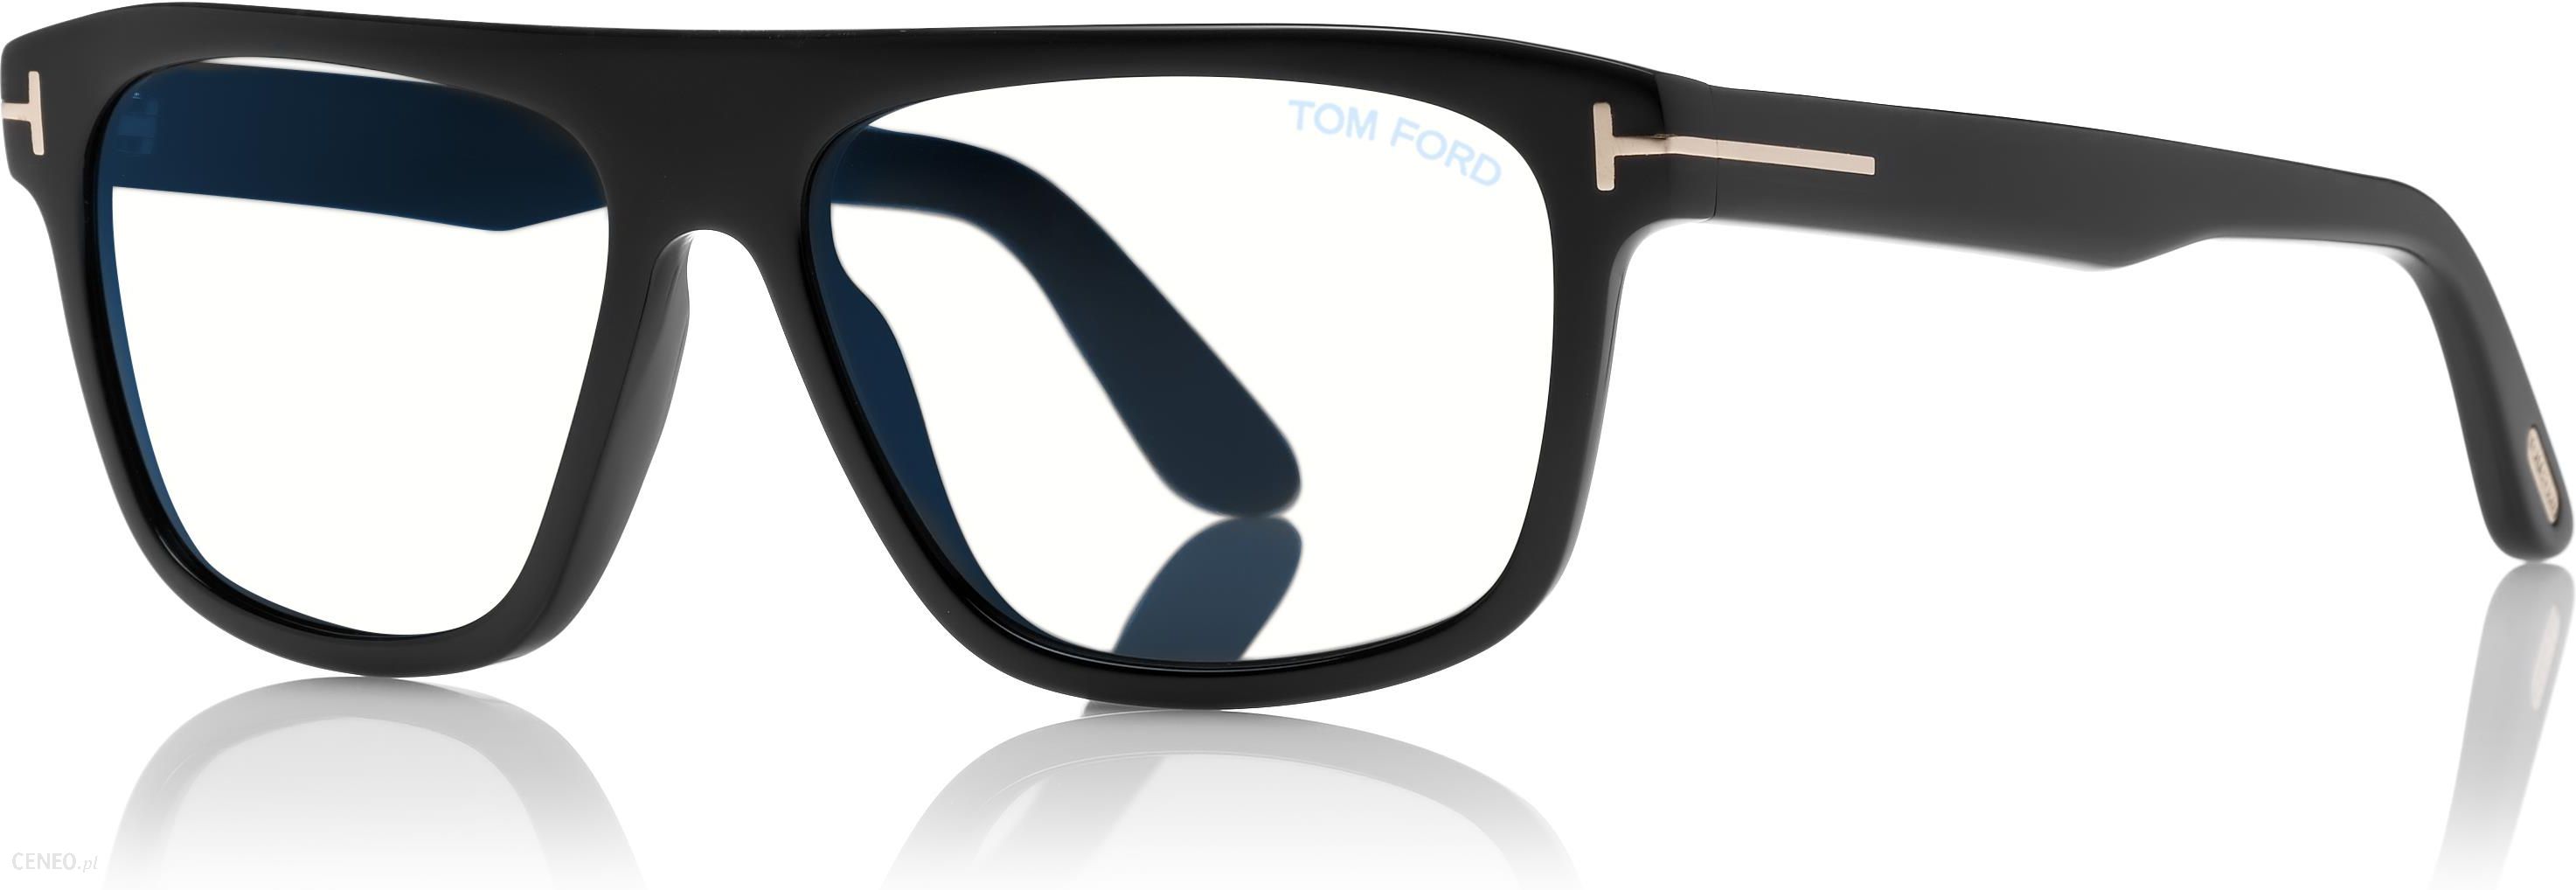 Okulary przeciwsłoneczne Tom Ford 0628 001 57 - Ceny i opinie 